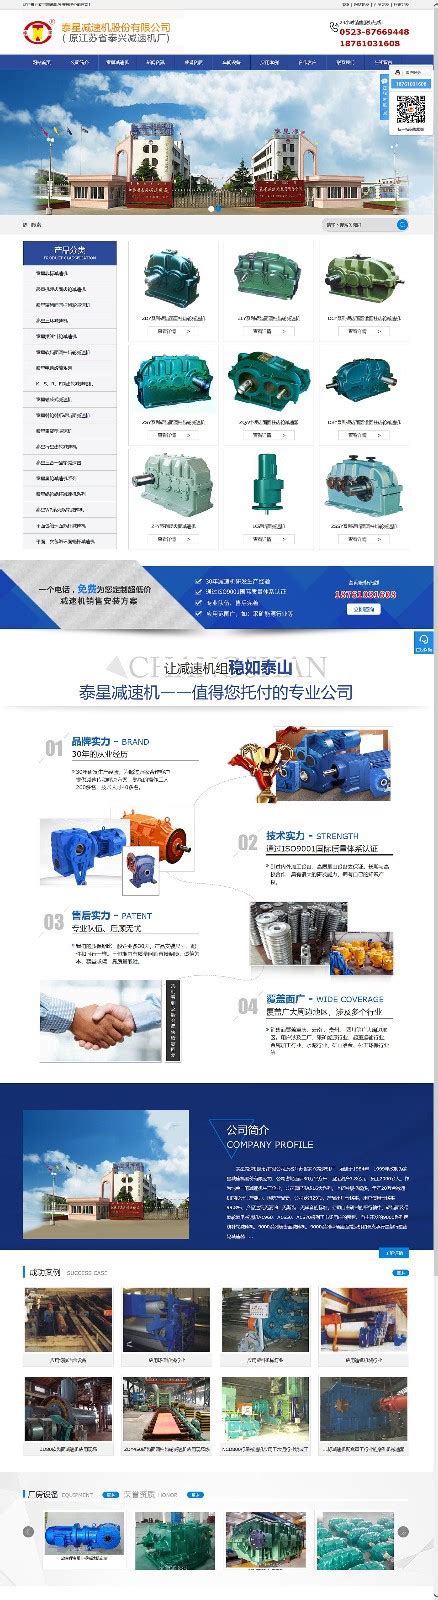 泰兴营销型网站设计公司